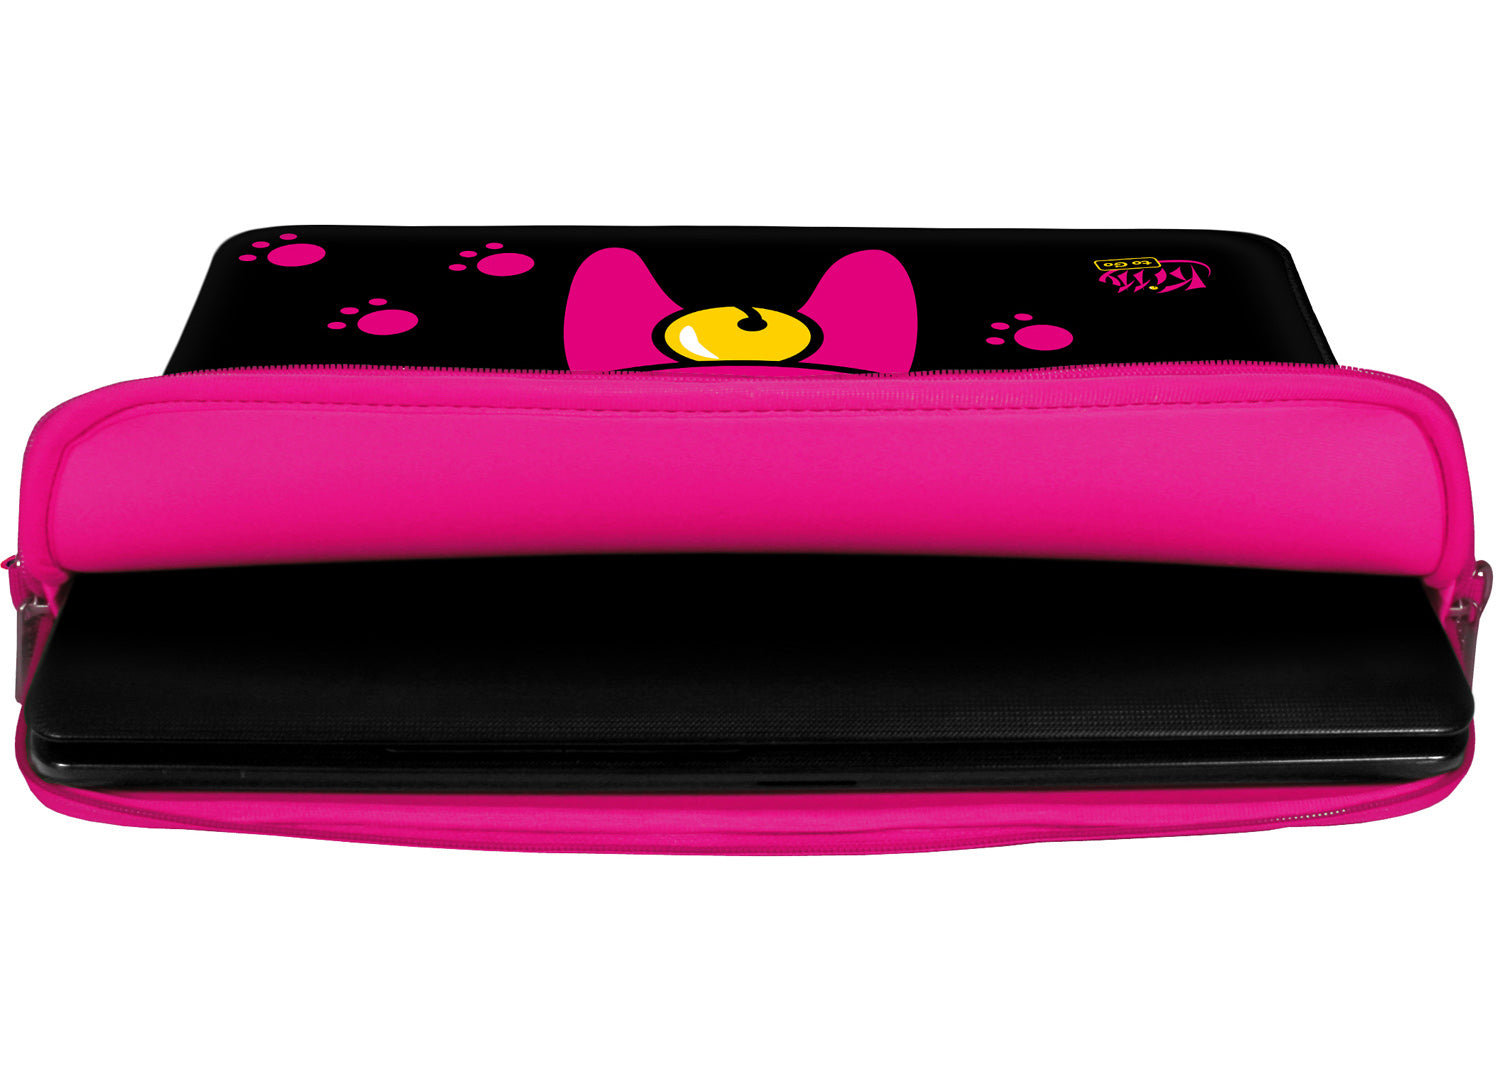 Innenansicht mit Schutzlippen der LS133 Kitty to Go Designer Laptop Tasche in pink aus wasserabweisendem Neopren